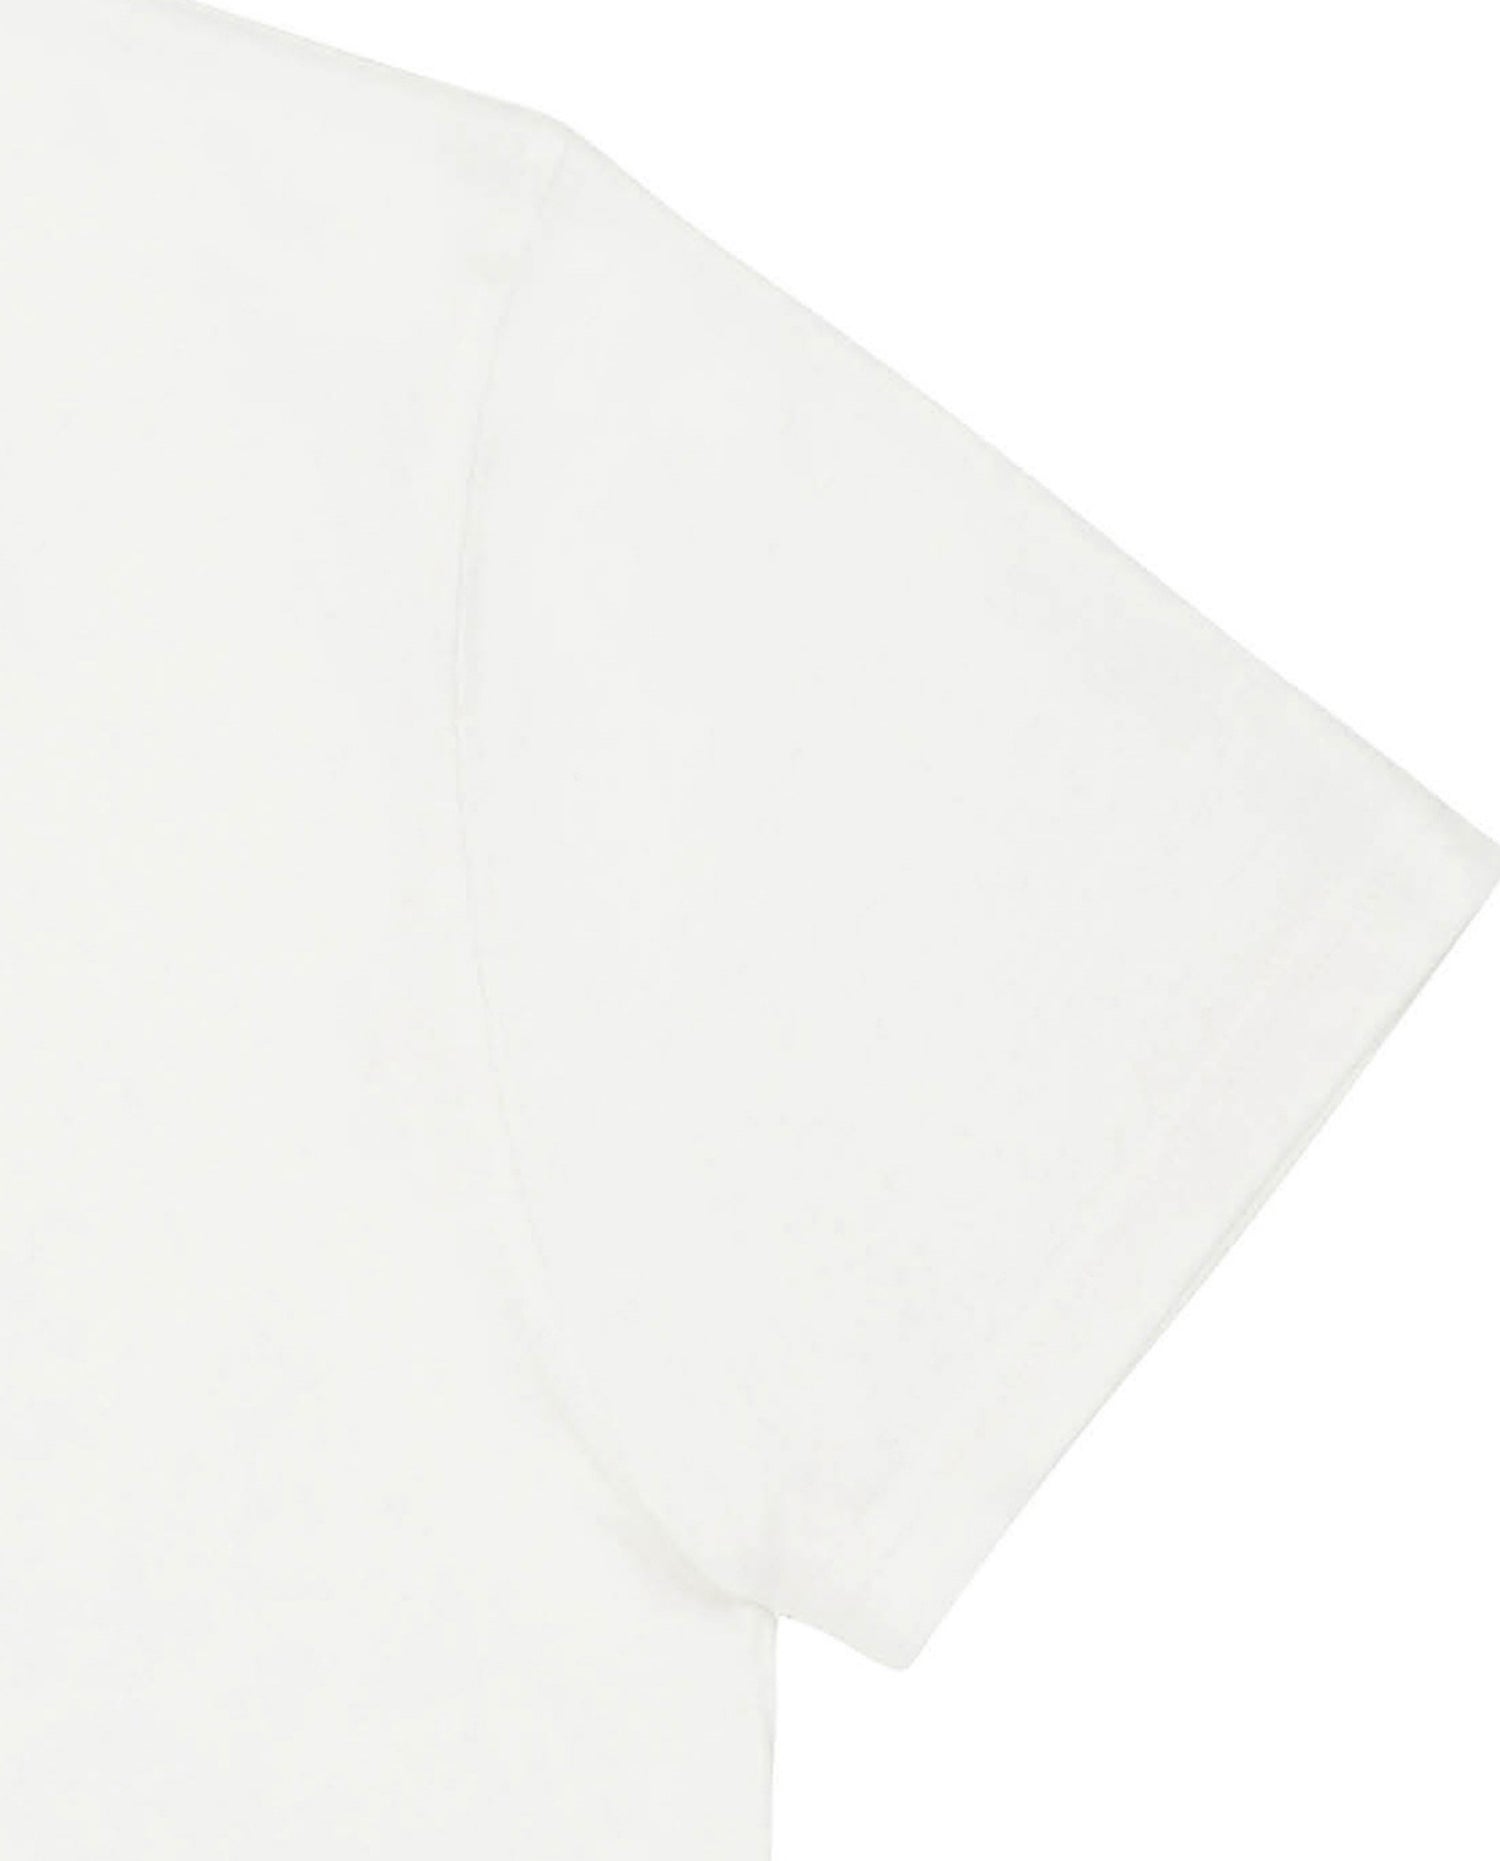 Marché commun t-shirt en coton bio blanc imprimé bleu rouge bask in the sun